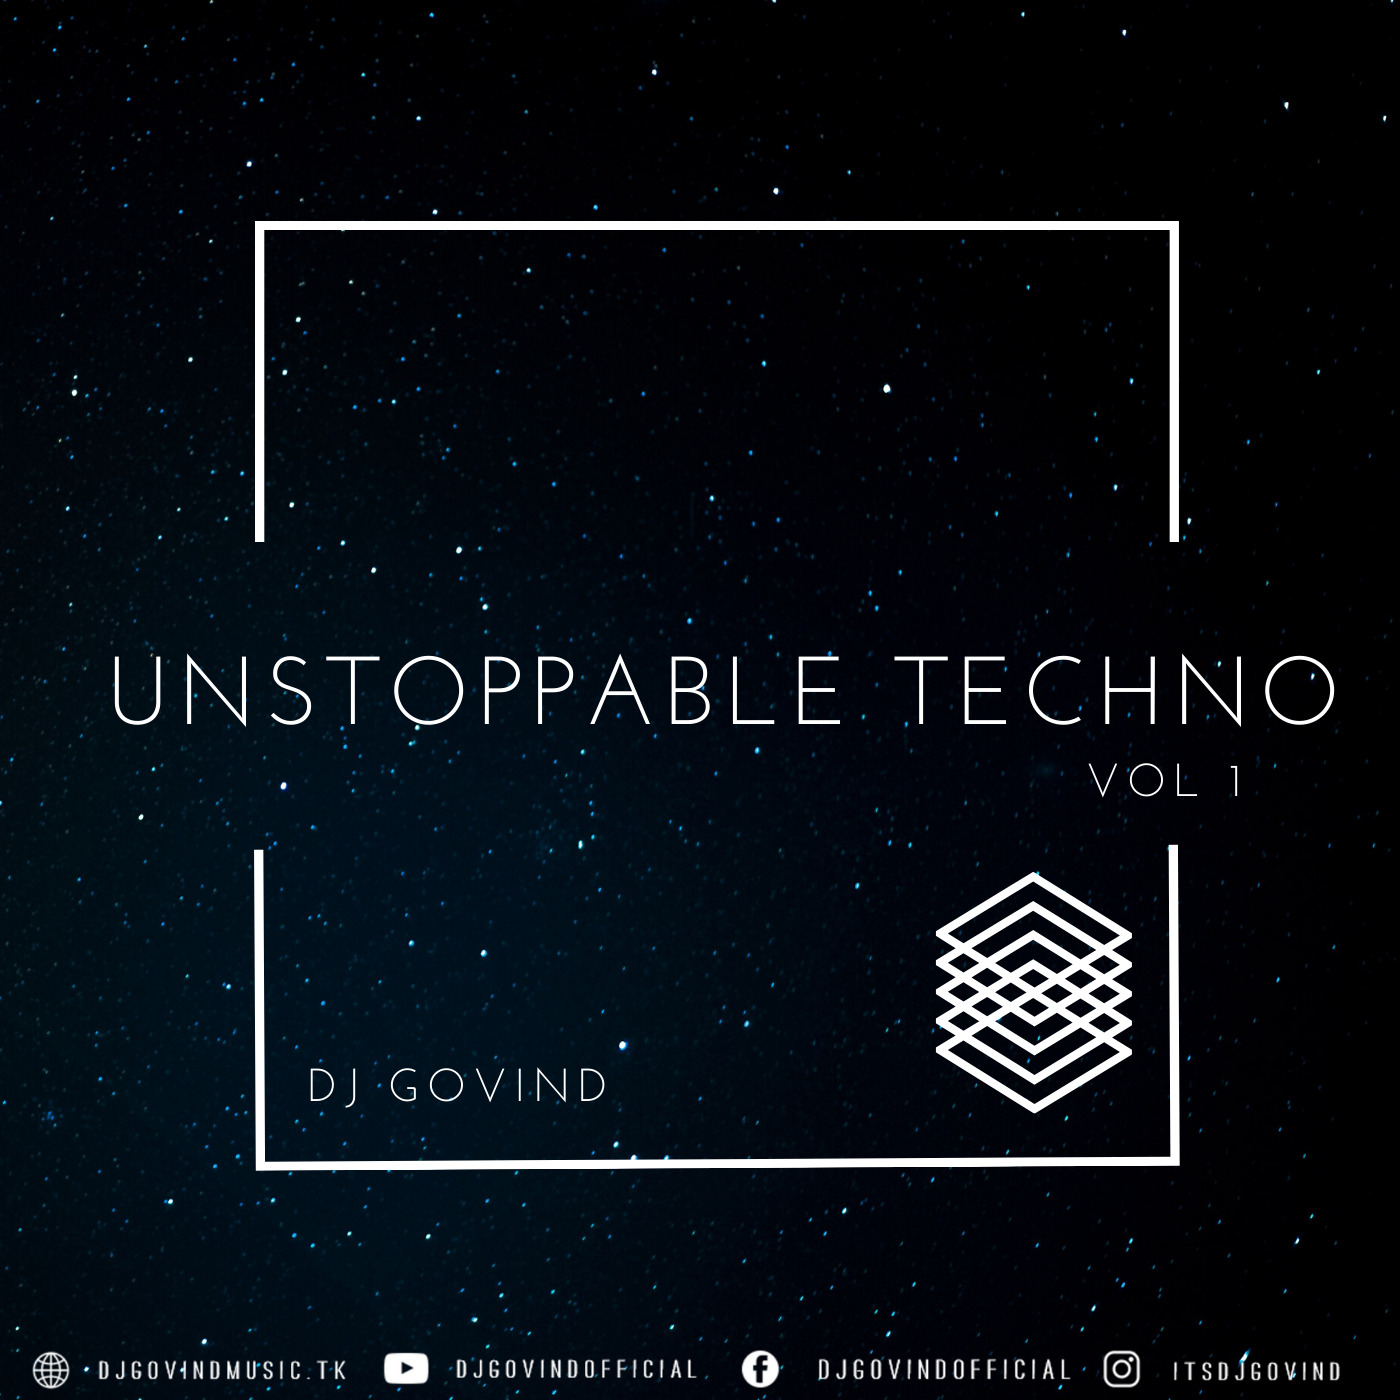 Unstoppable Techno Vol. 1 by DJ Govind